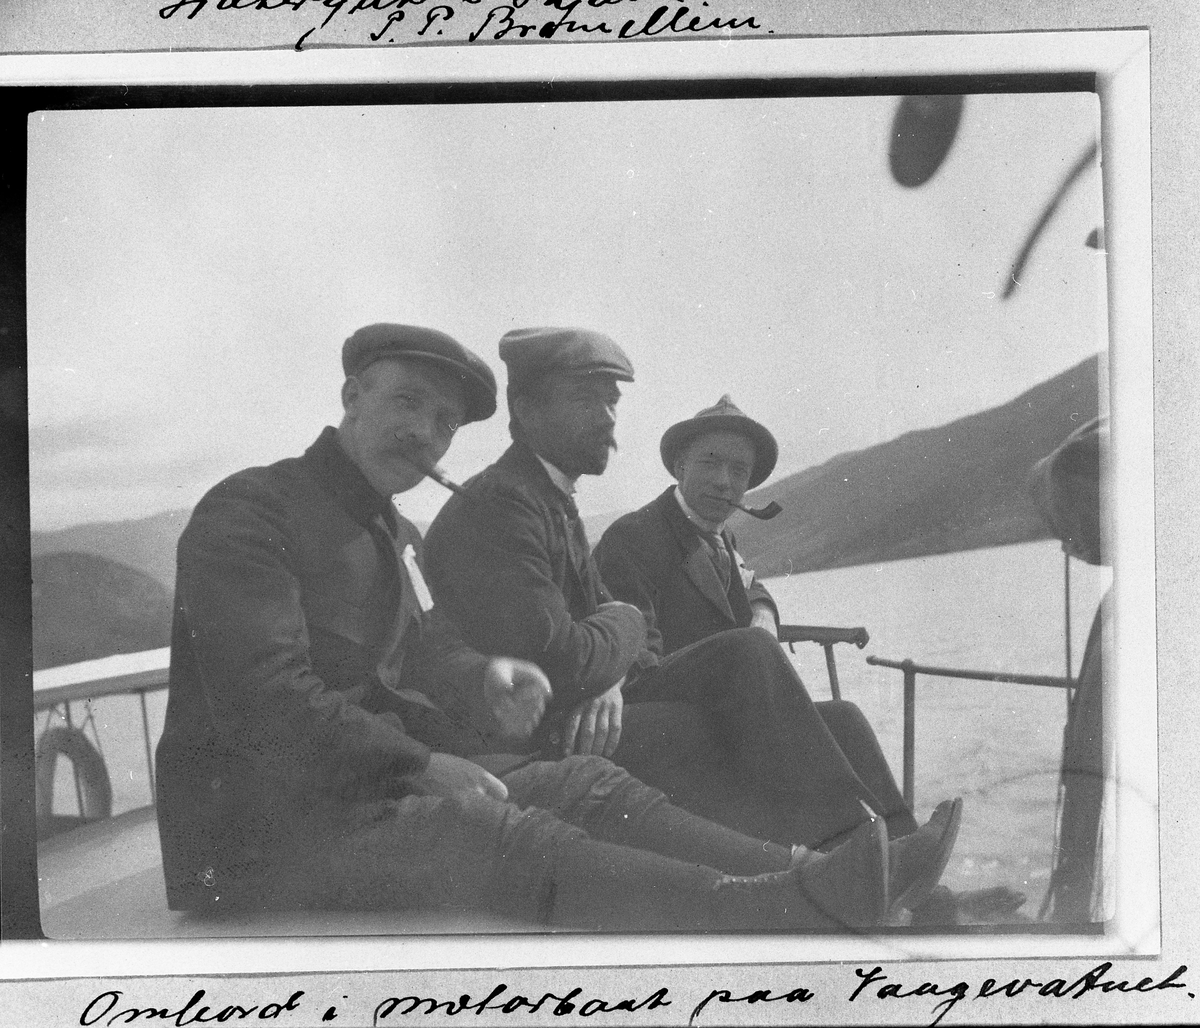 Tre ukjente menn i en båt på et fjellvatn. Vatnet heter Vaagevatnet (Vågåvatnet?) eller Langevatnet (vanskelig å tyde sikkert) ifølge det som er skrevet under bildet, men nærmere geografisk plassering mangler.